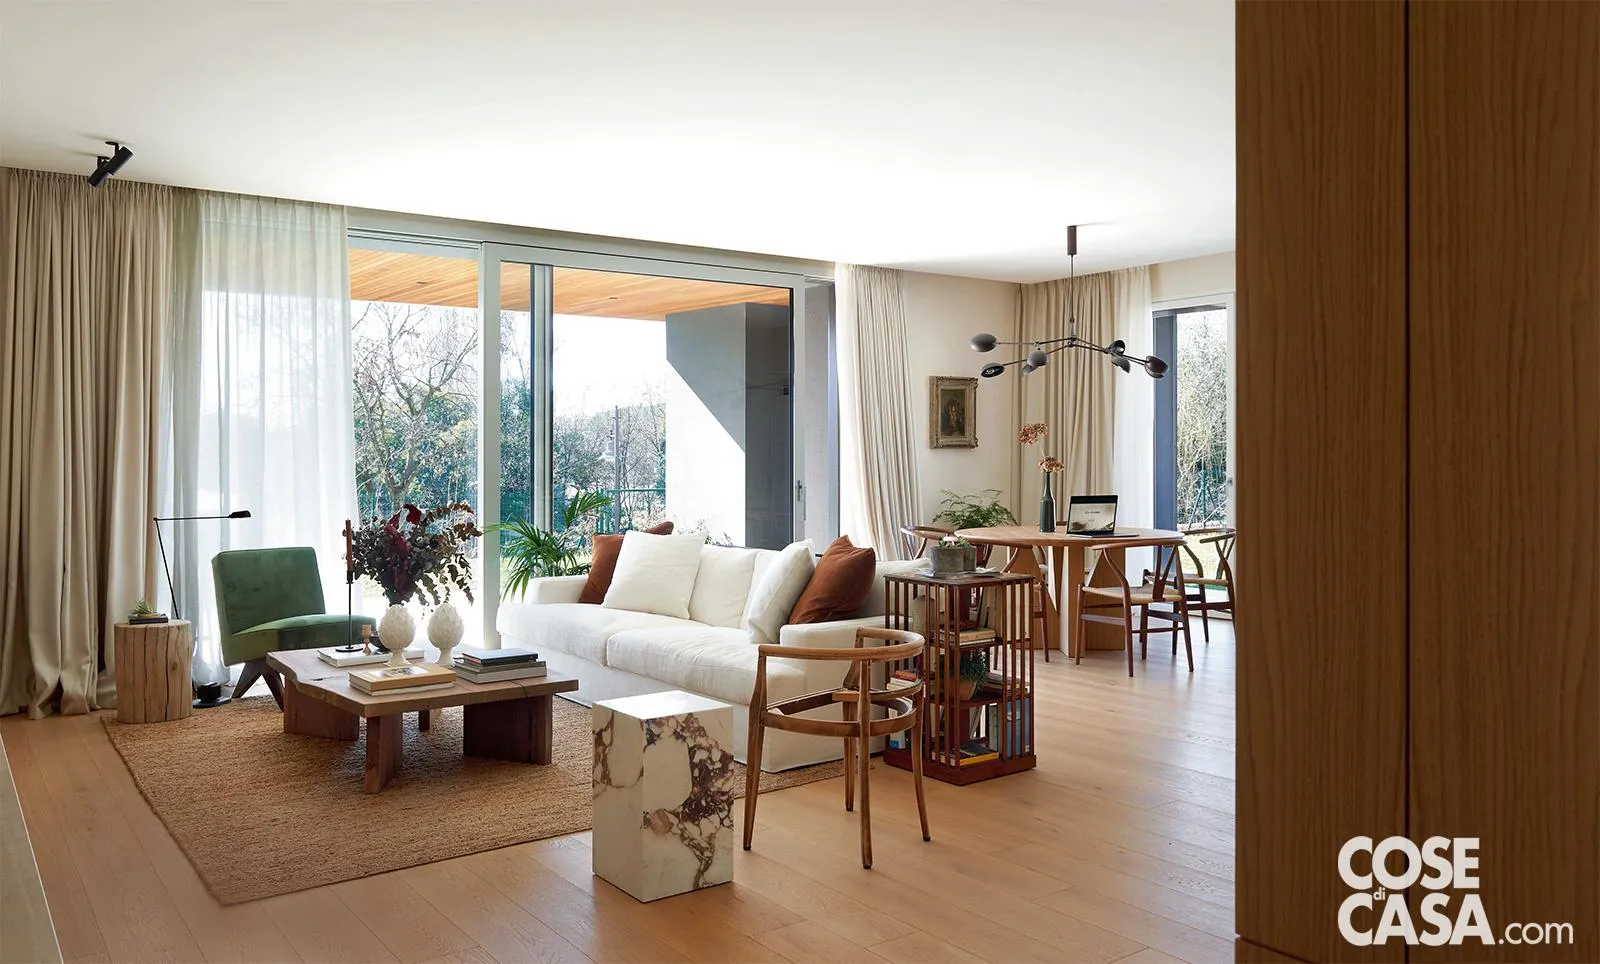 La casa diventa moderna tra spazi aperti, domotica e colori neutri -  CasaFacile